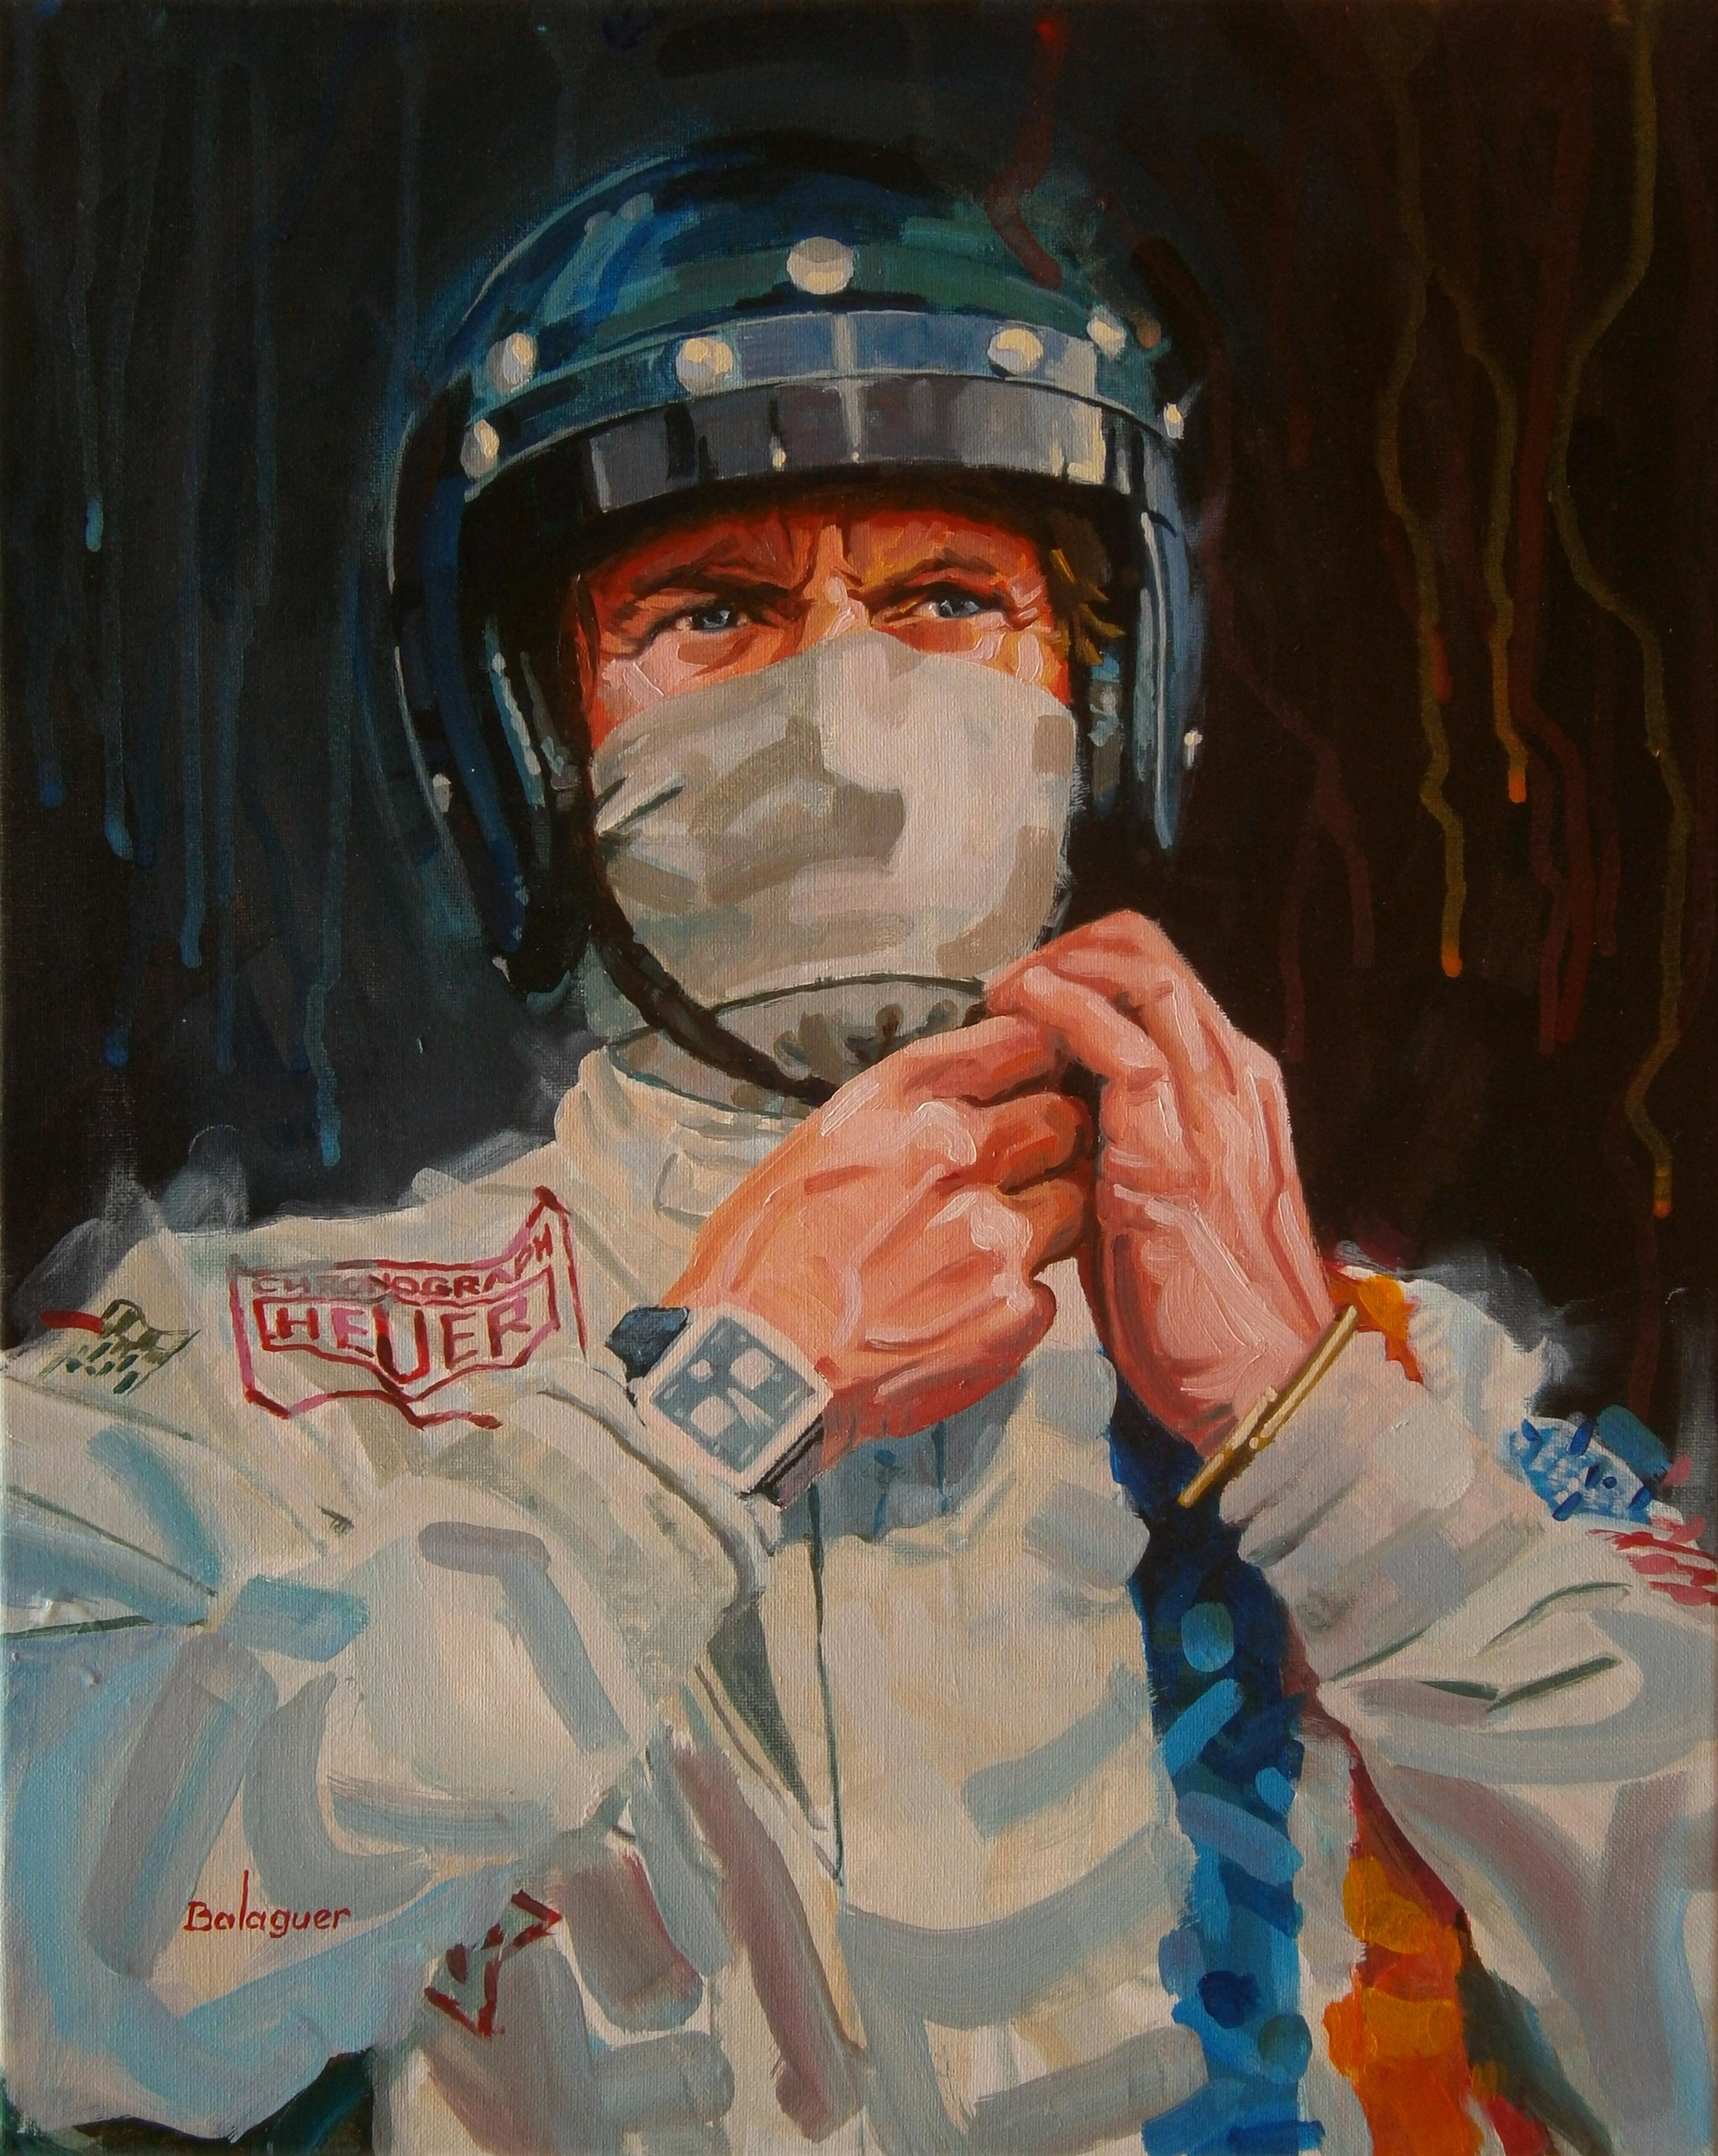 Alex BALAGUER Figurative Painting - Steve McQueen as Michael Delaney "Le Mans" film 1970 original canvas painting